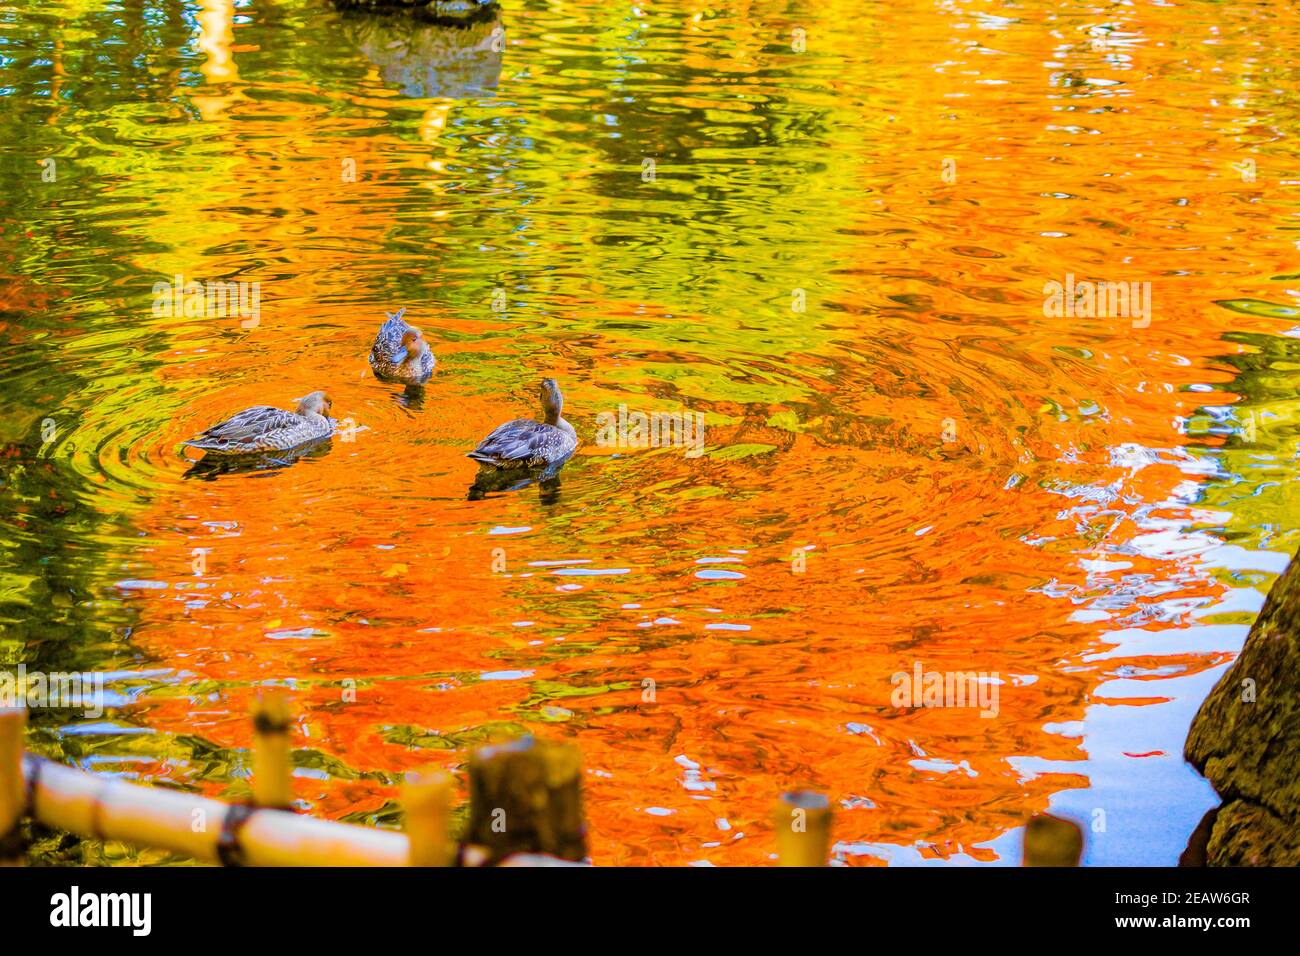 Canard de l'étang avec feuilles d'automne réfléchis Banque D'Images